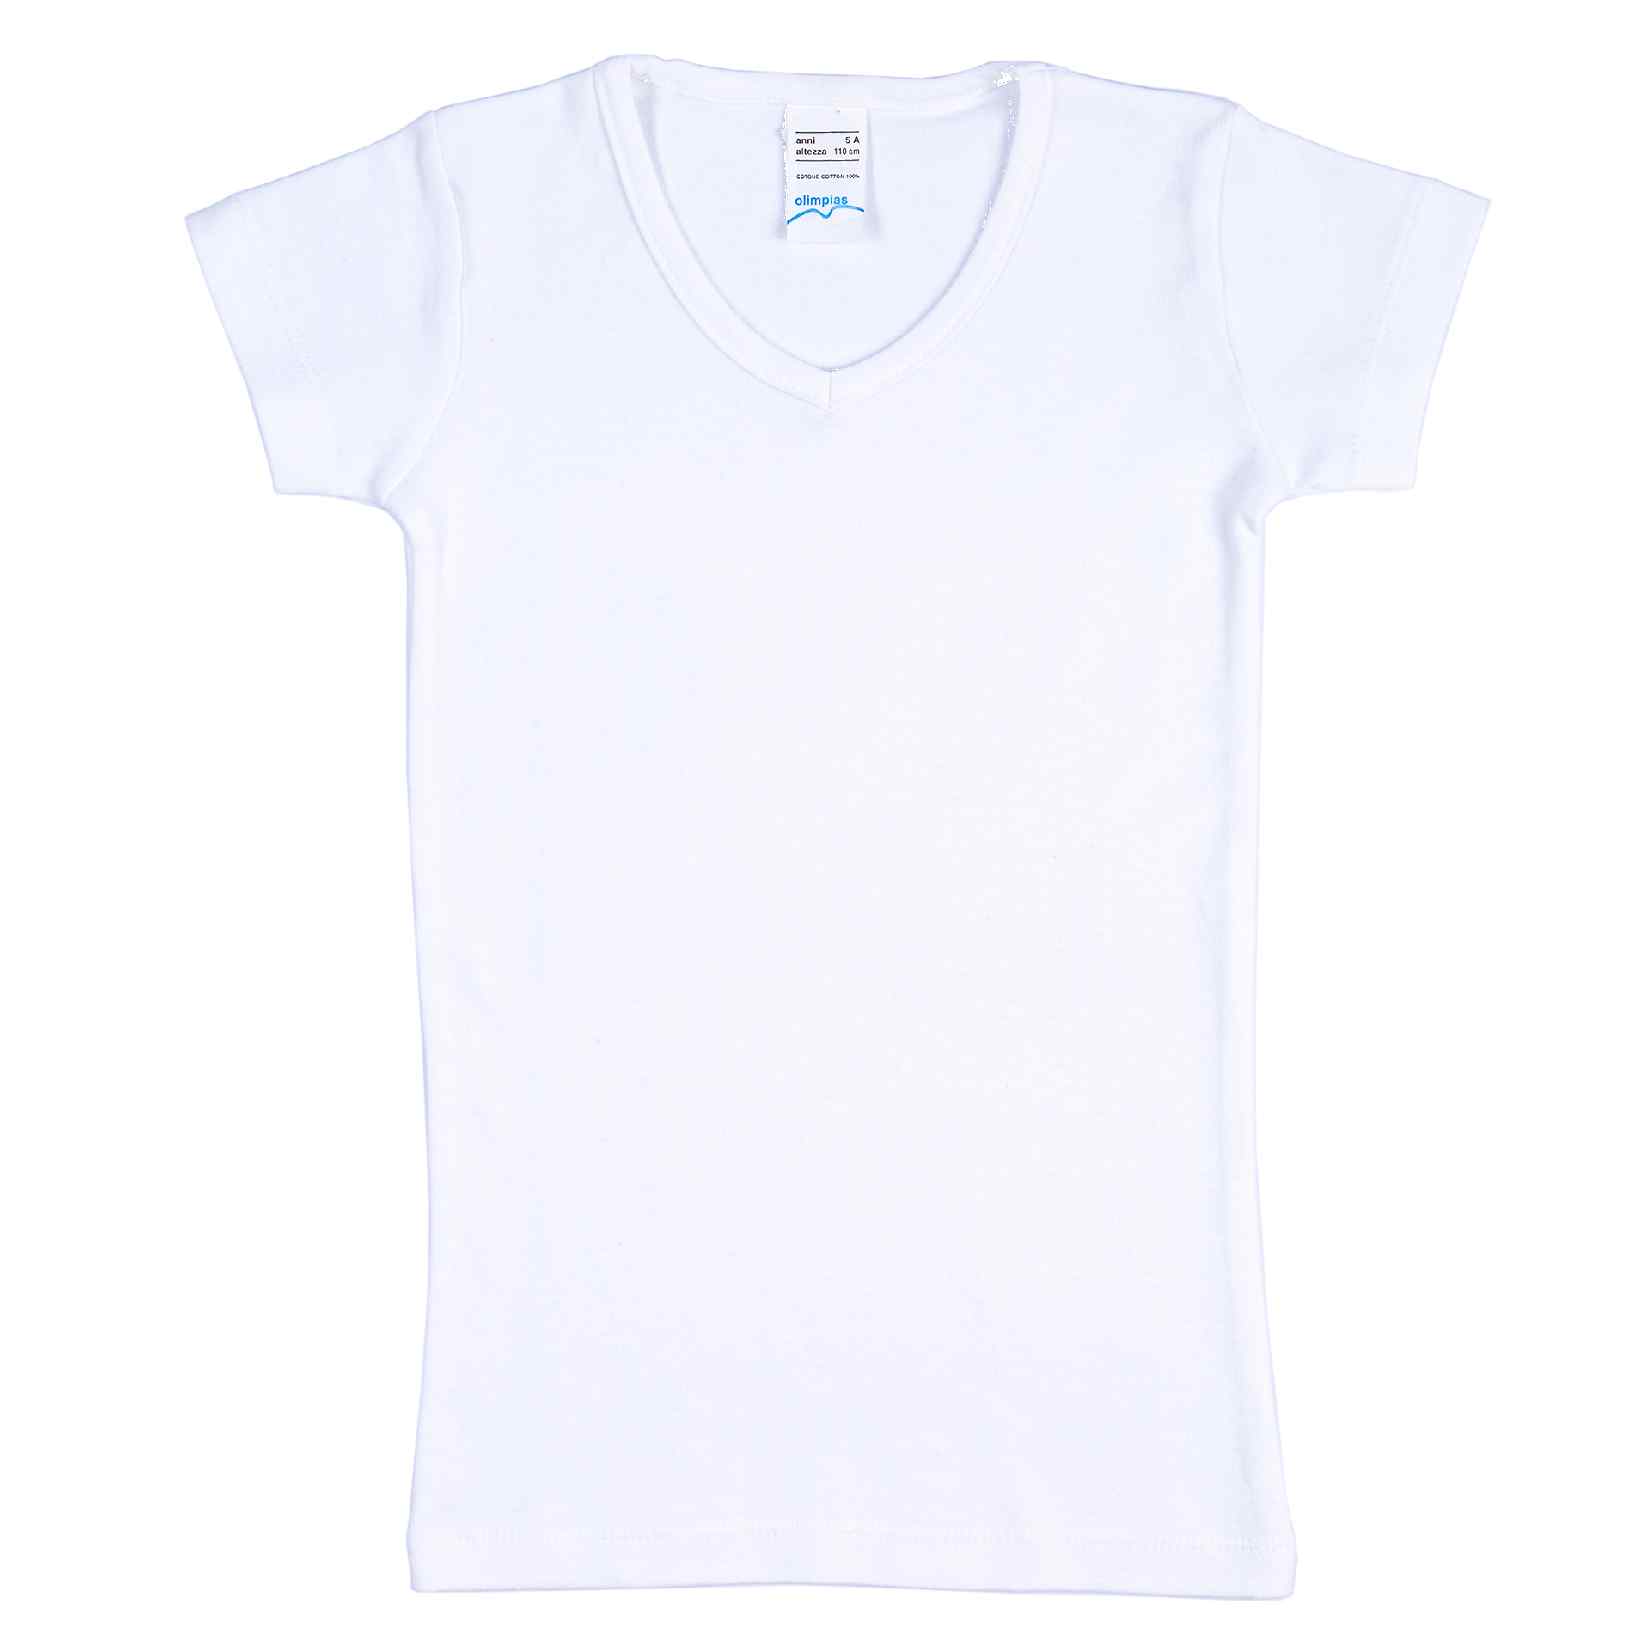 Dziewczęca koszulka z krótkim rękawem, biała, Olimpias